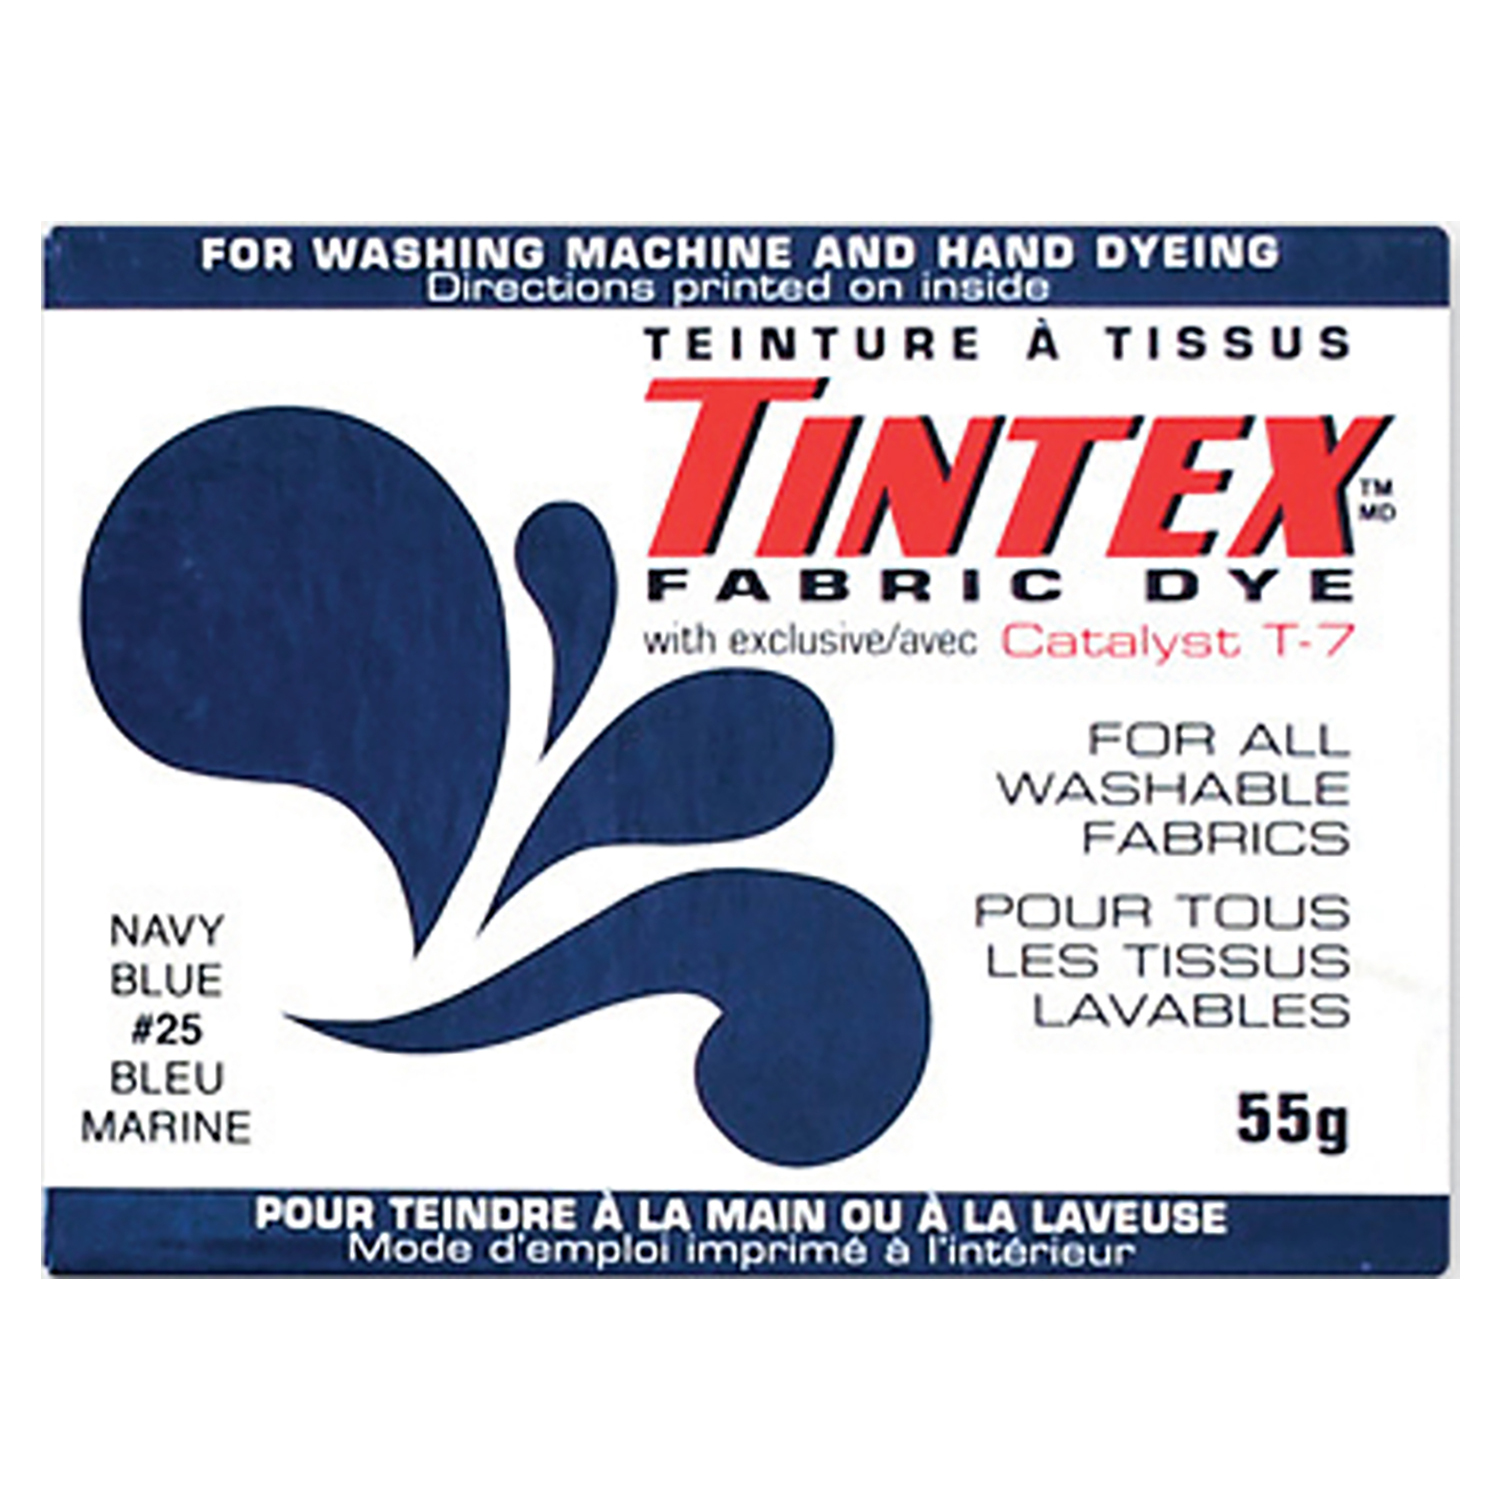 Tintex - Teinture à tissues tout usage - Bleu marine #25